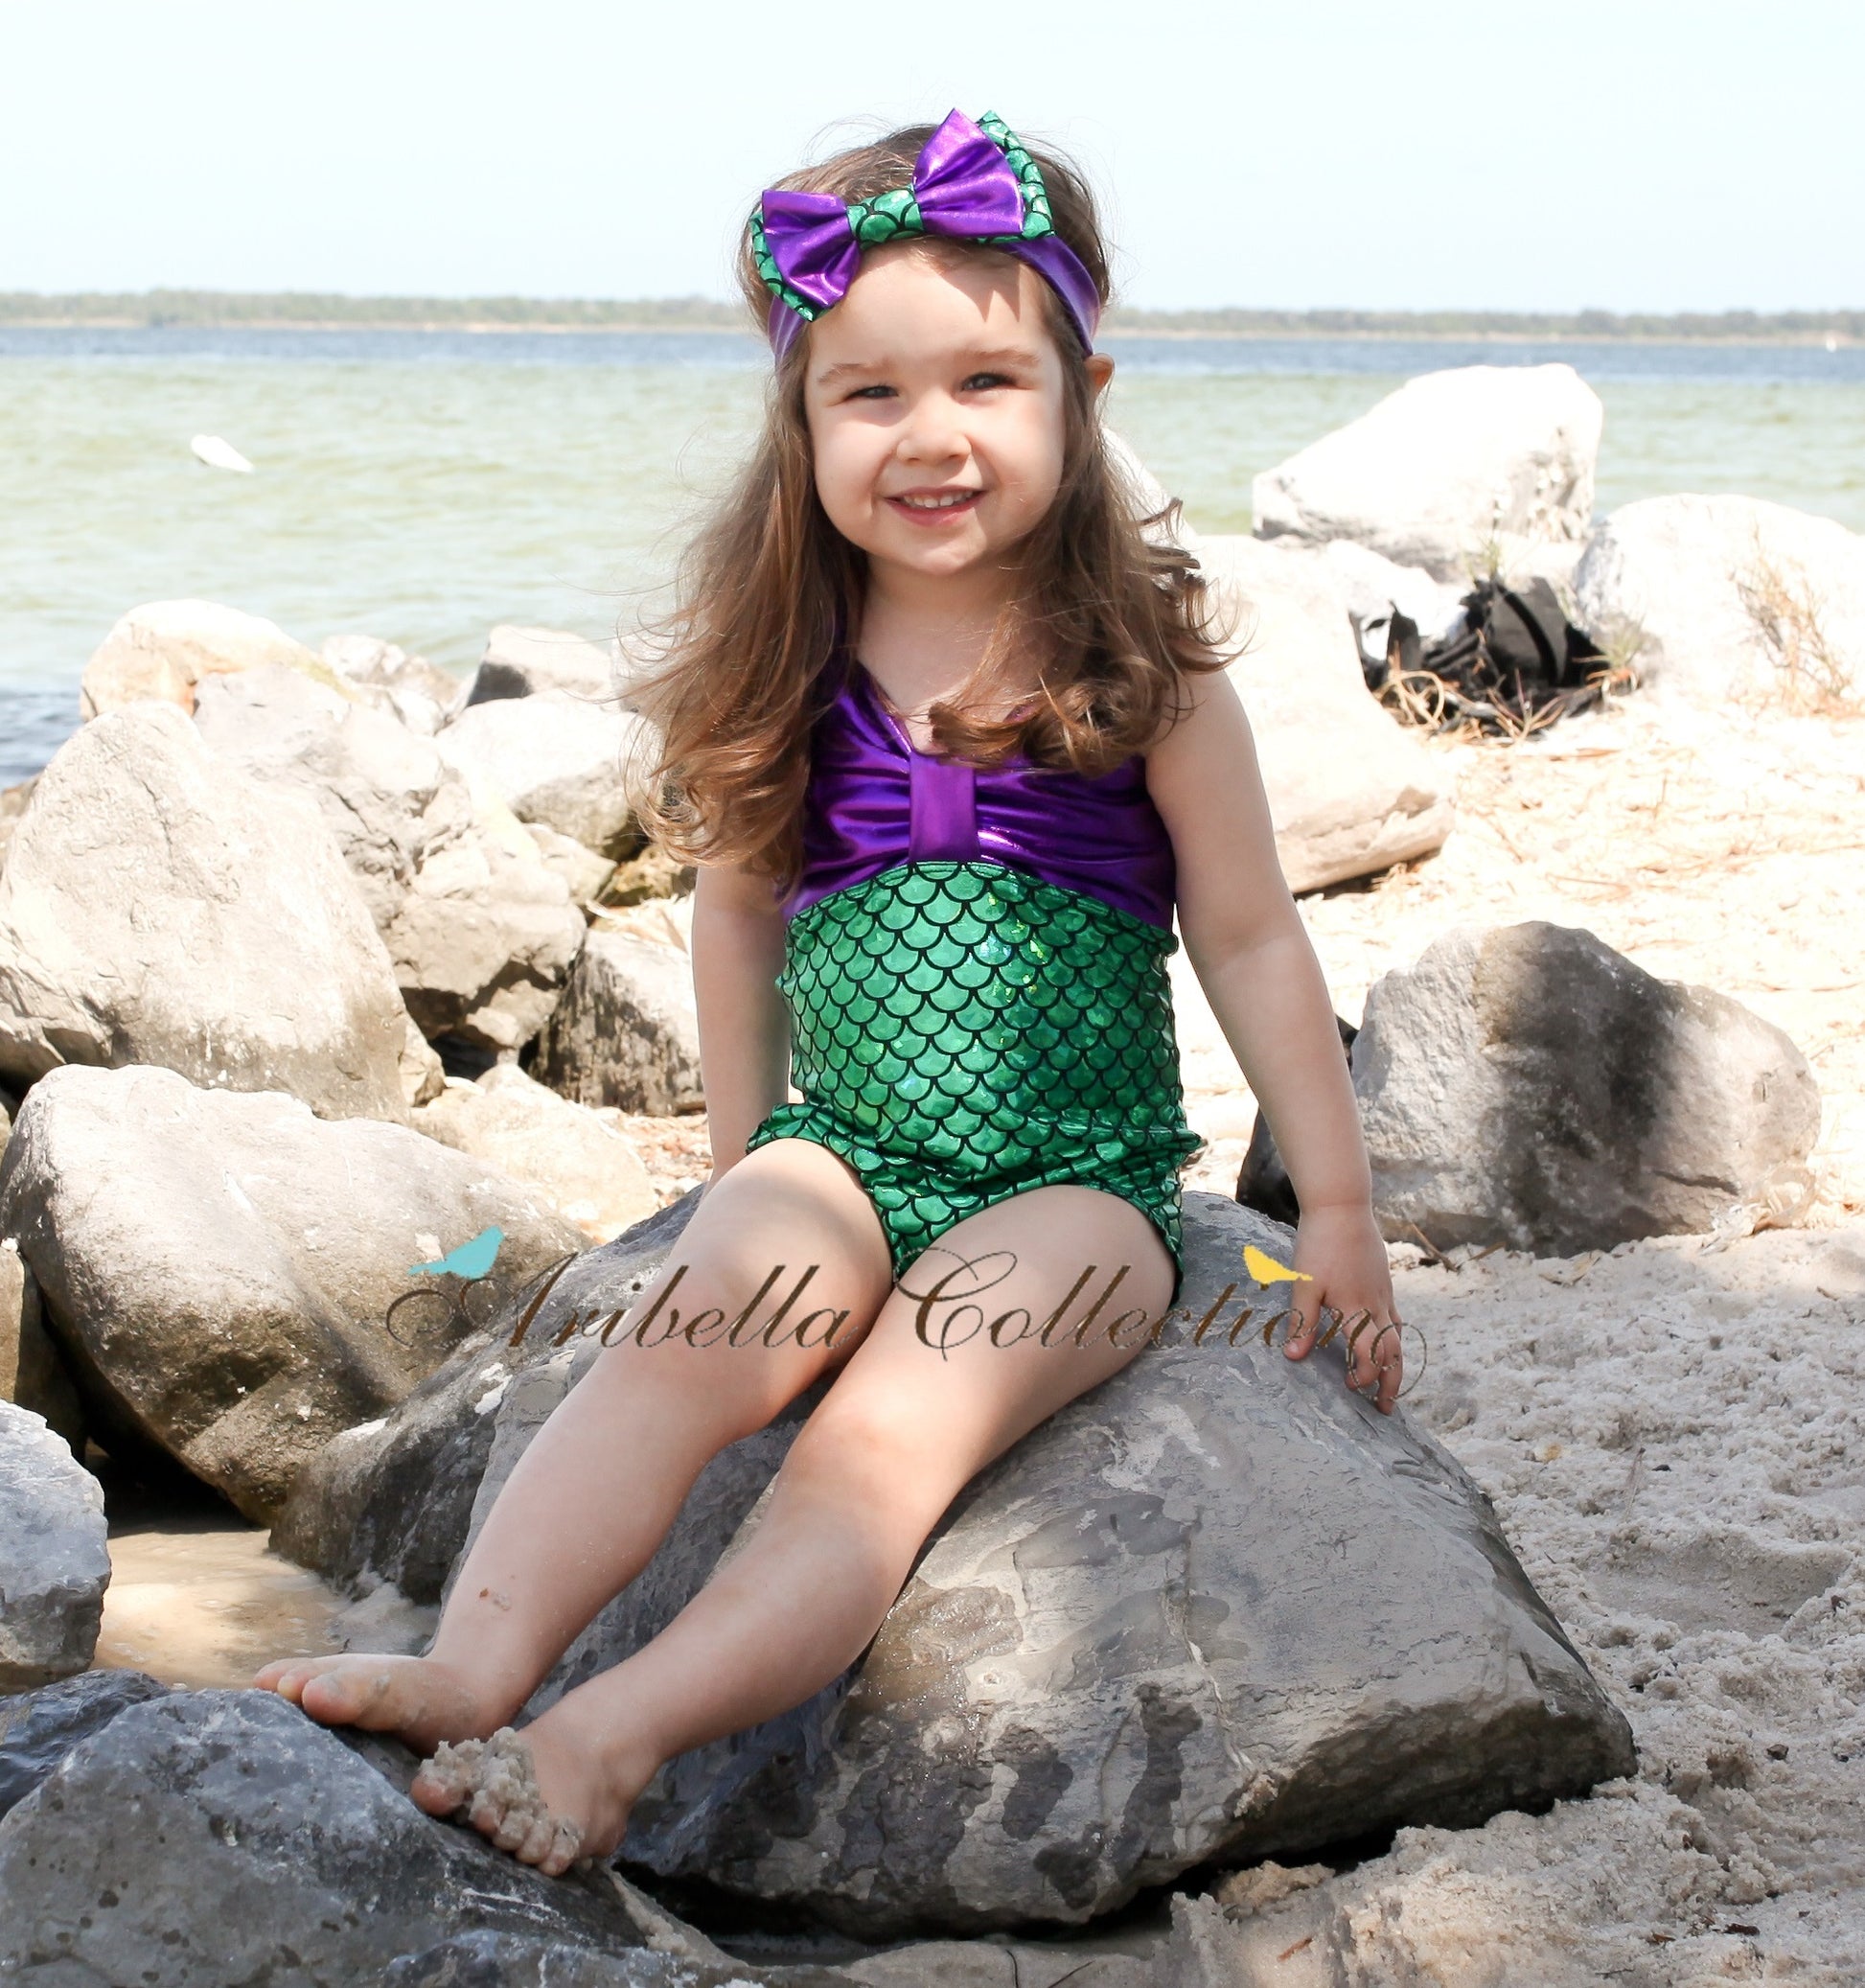 Mermaid Leggings - Iridescent Multi Color – Aribella Collection, Inc.